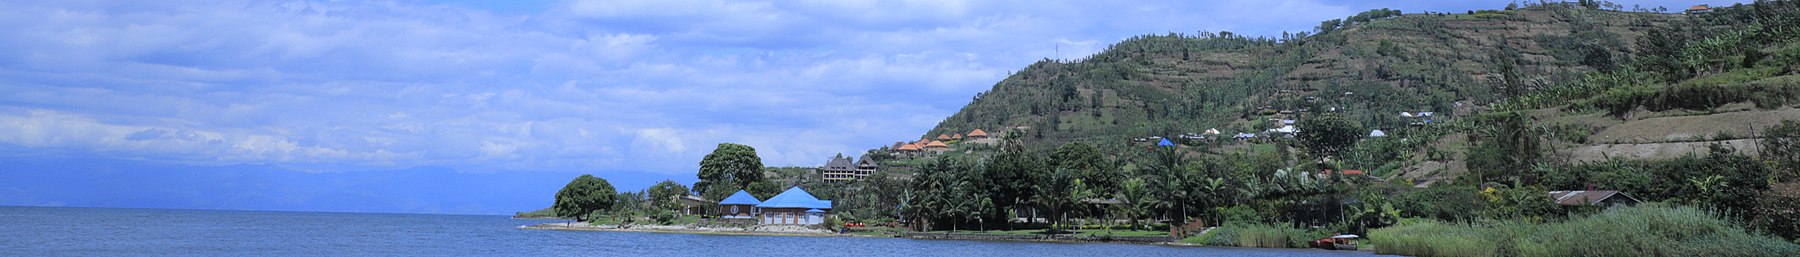 Gisenyi lac Kivu banner.jpg